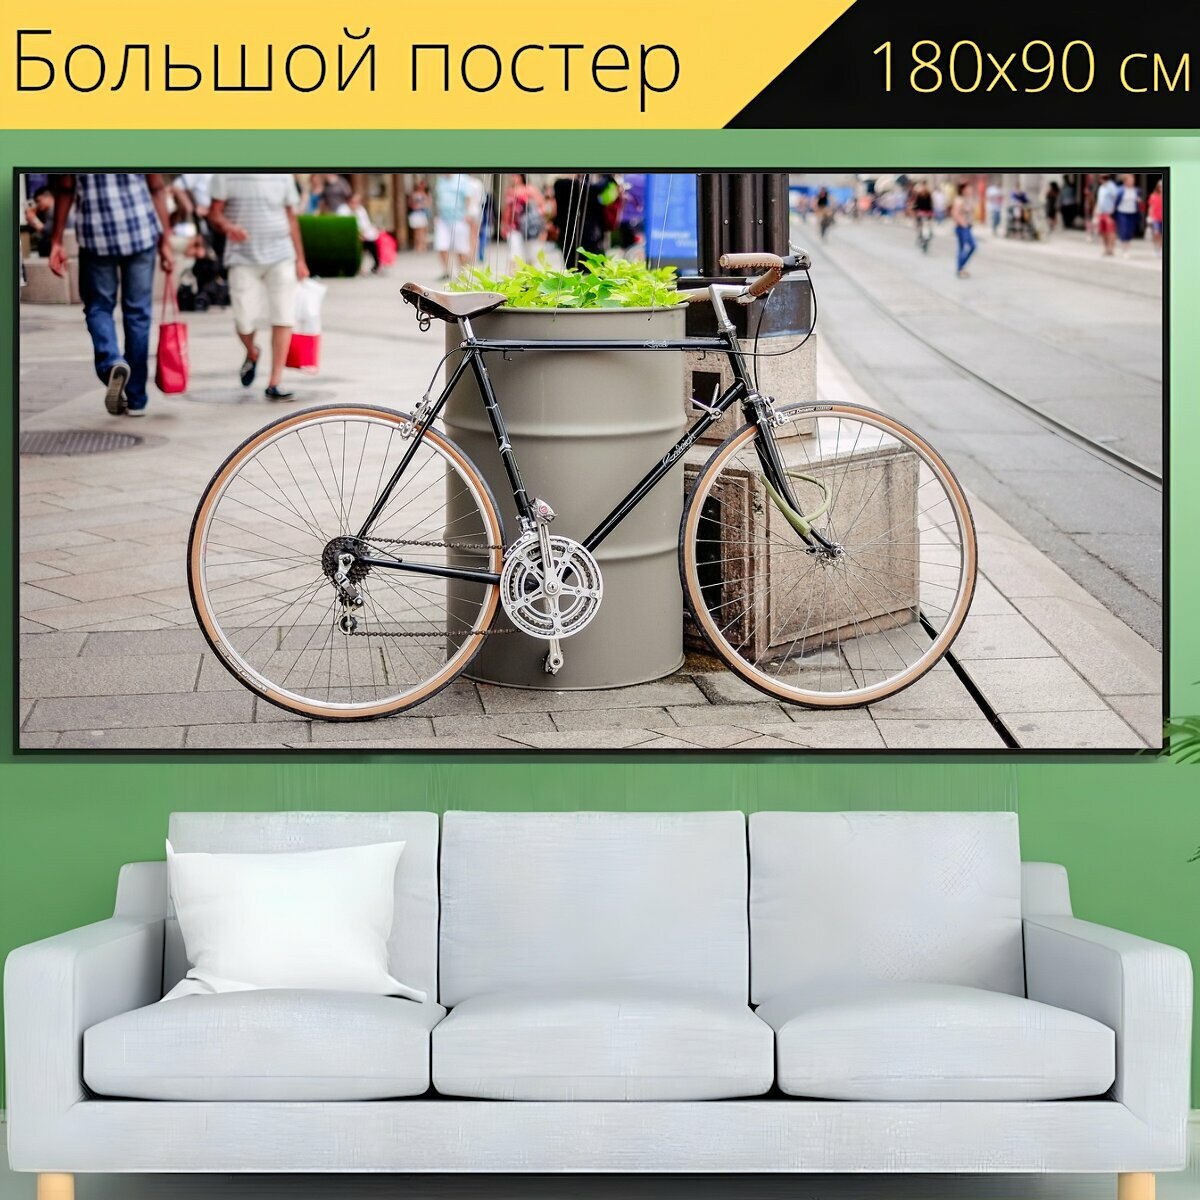 Большой постер "Велосипед, тротуар, улица" 180 x 90 см. для интерьера